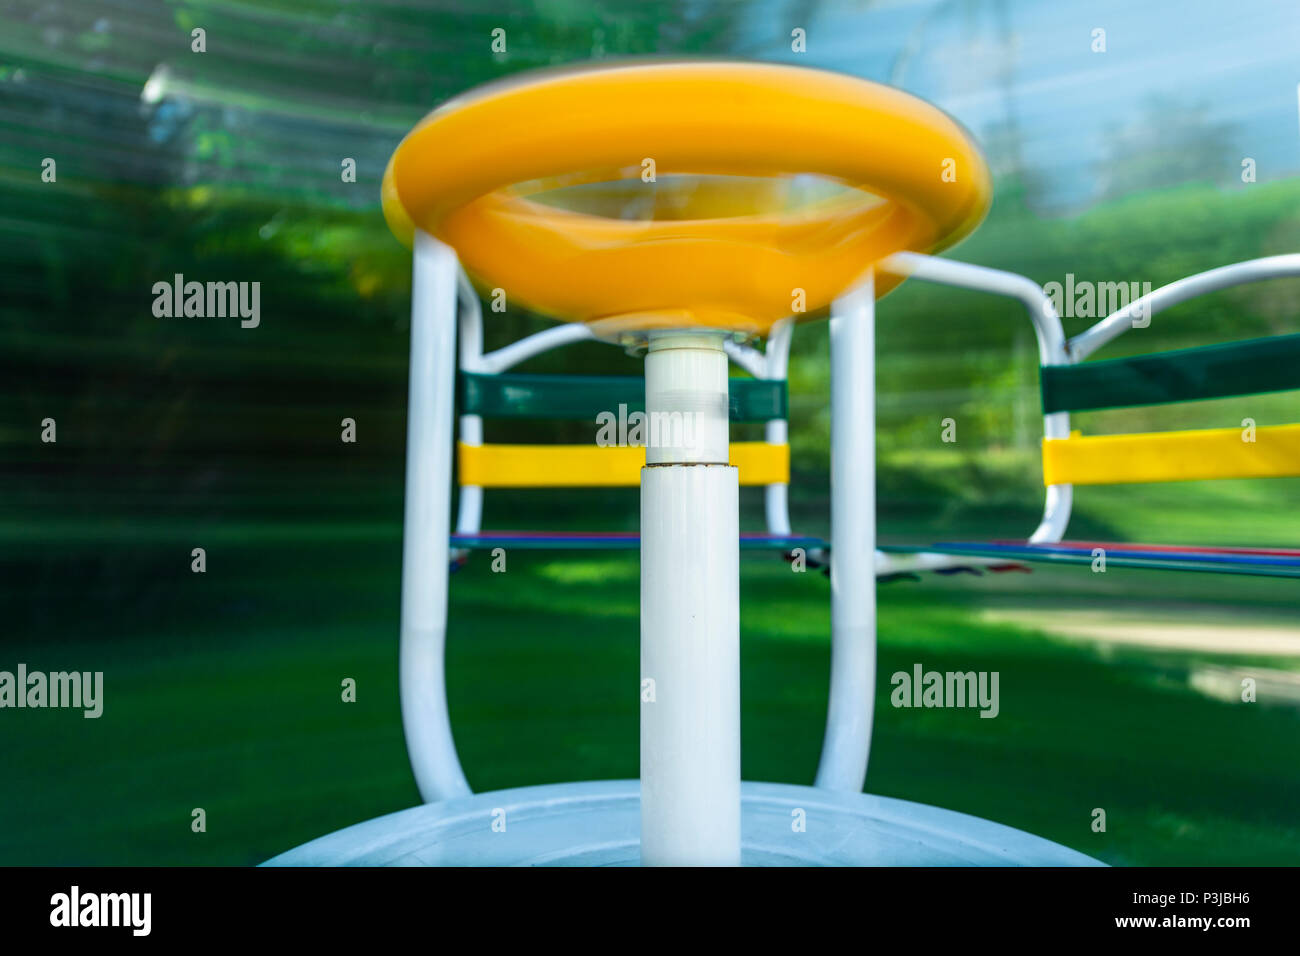 Immagine di un merry-go-round (parco giochi attrezzato) prese in movimento. Una lunga esposizione per mostrare come si gira e movimento. Foto Stock